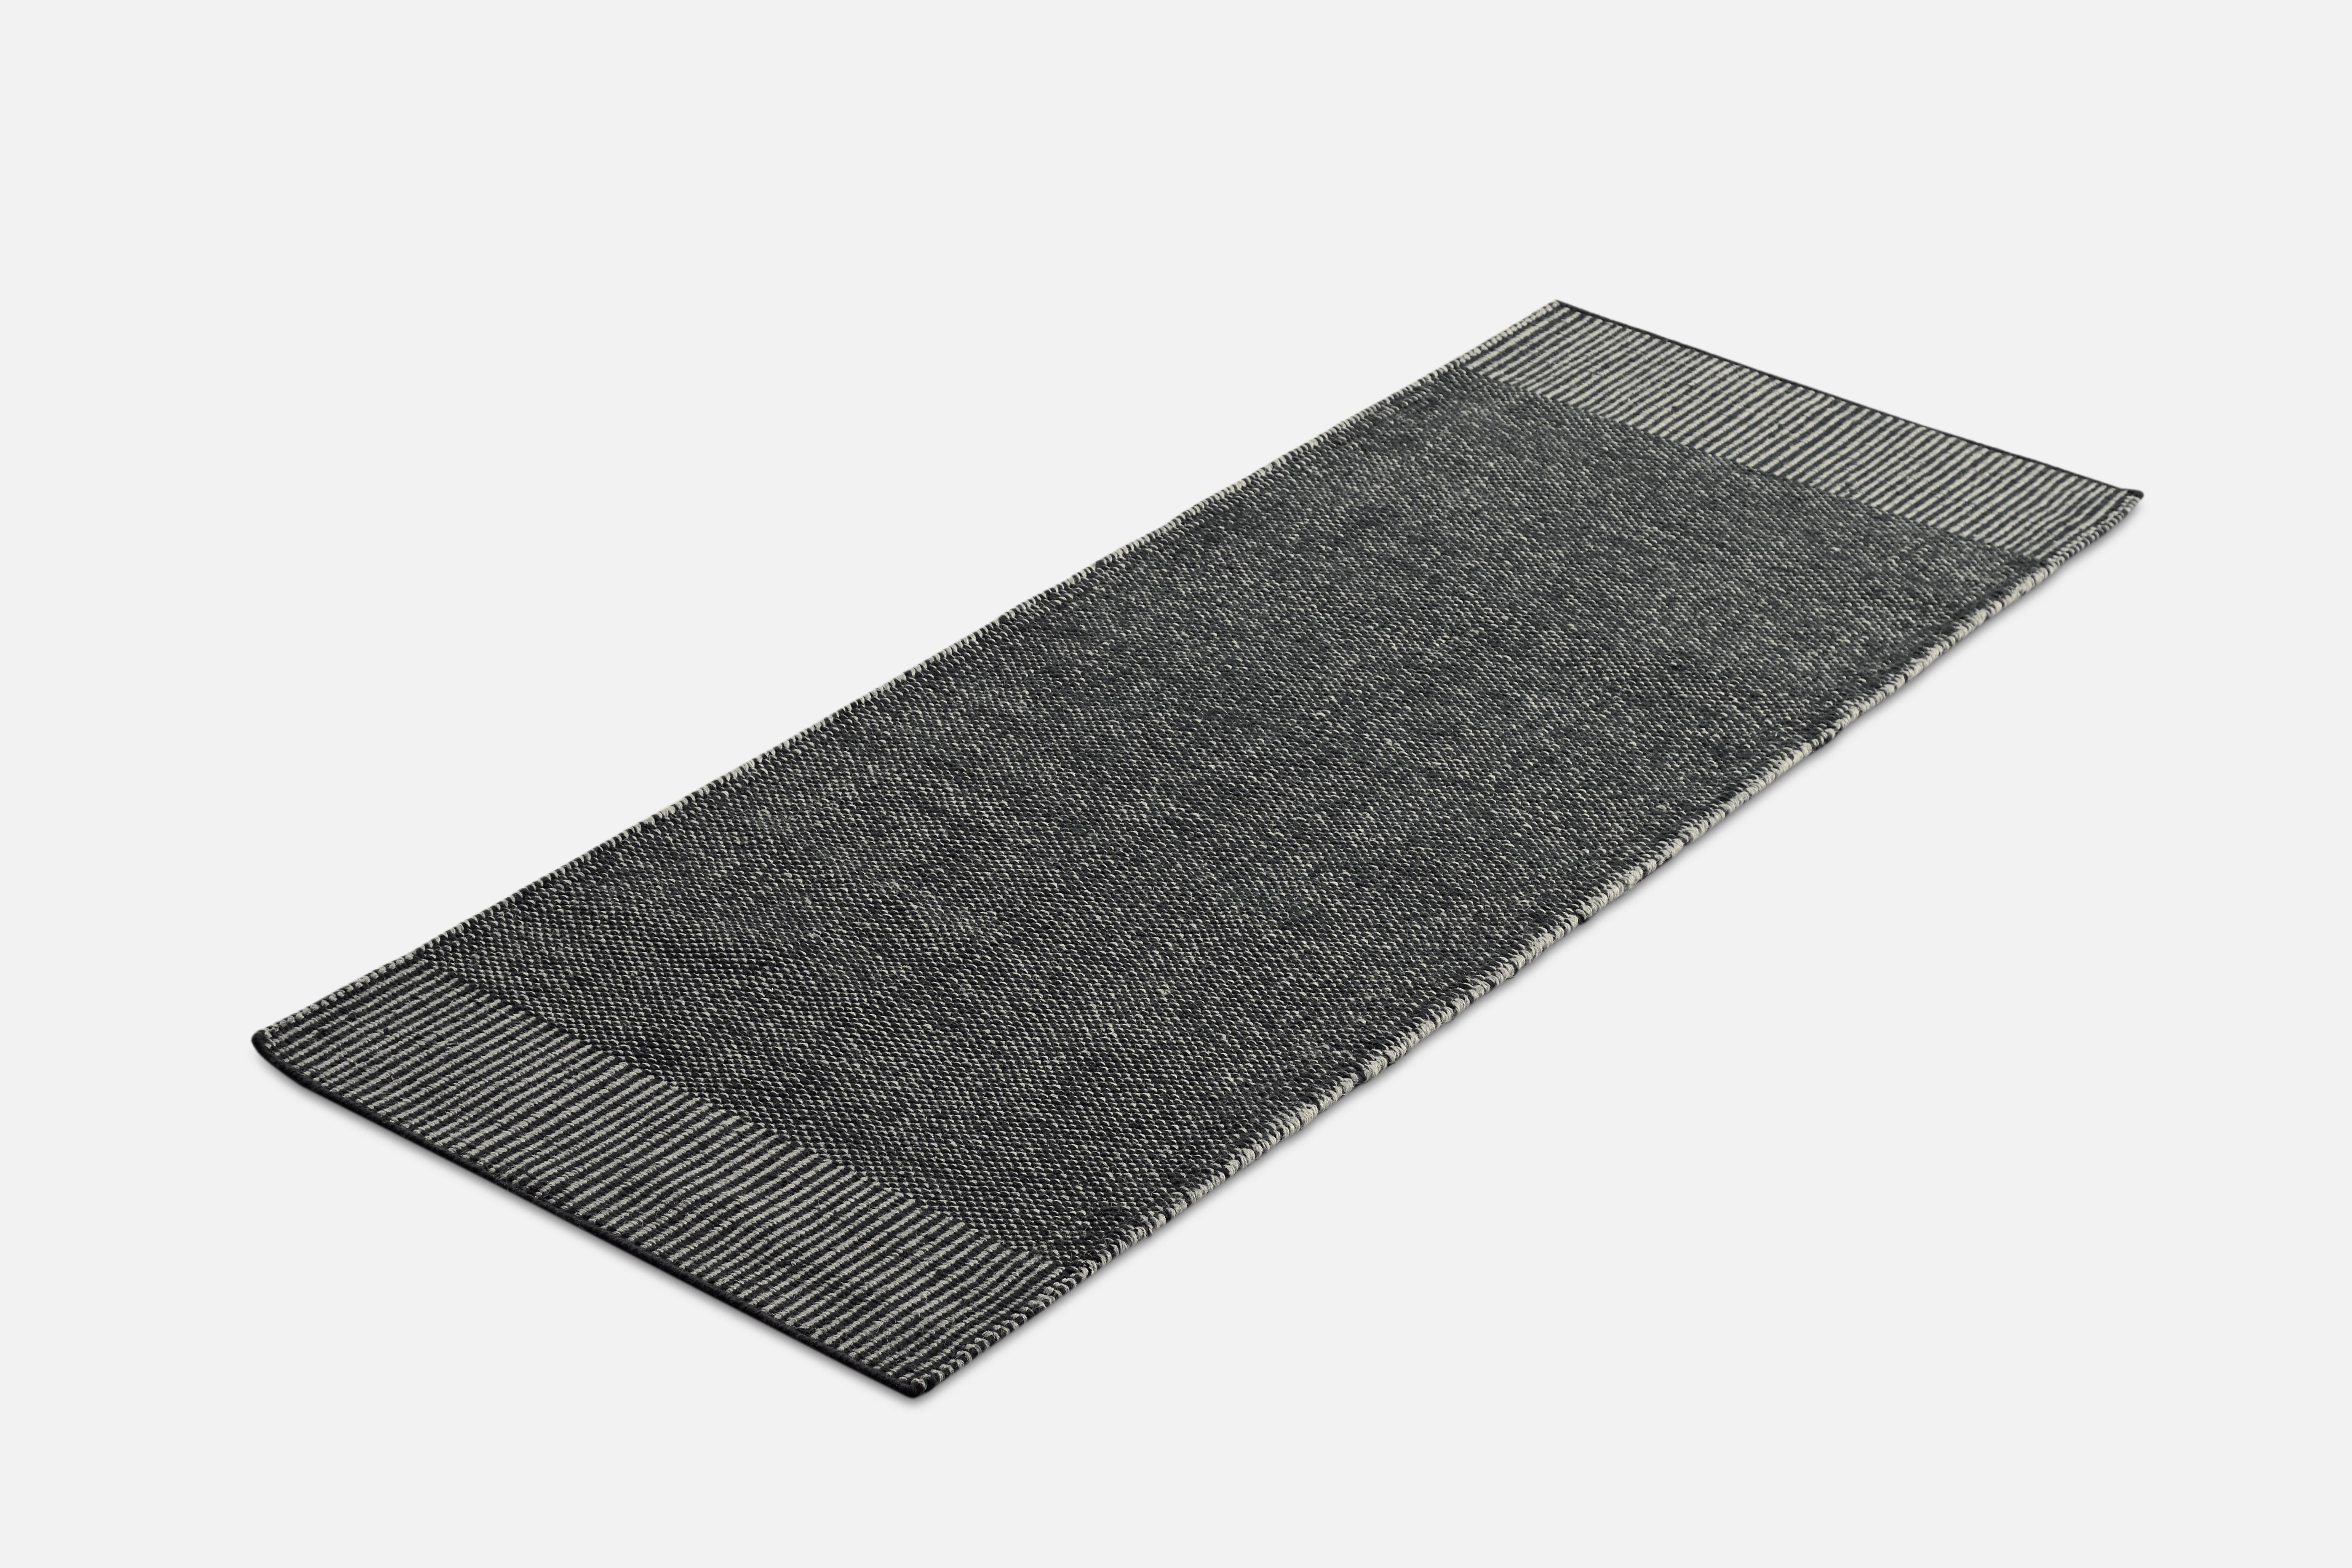 Grauer Rombo-Teppich von Studio MLR
MATERIALIEN: 65% Wolle, 35% Jute.
Abmessungen: B 75 x L 200 cm
Erhältlich in 3 Größen: B 90 x L 140, B 170 x L 240, B 75 x L 200 cm.
Erhältlich in Grau, Moosgrün und Rost.

Rombo zeichnet sich durch die